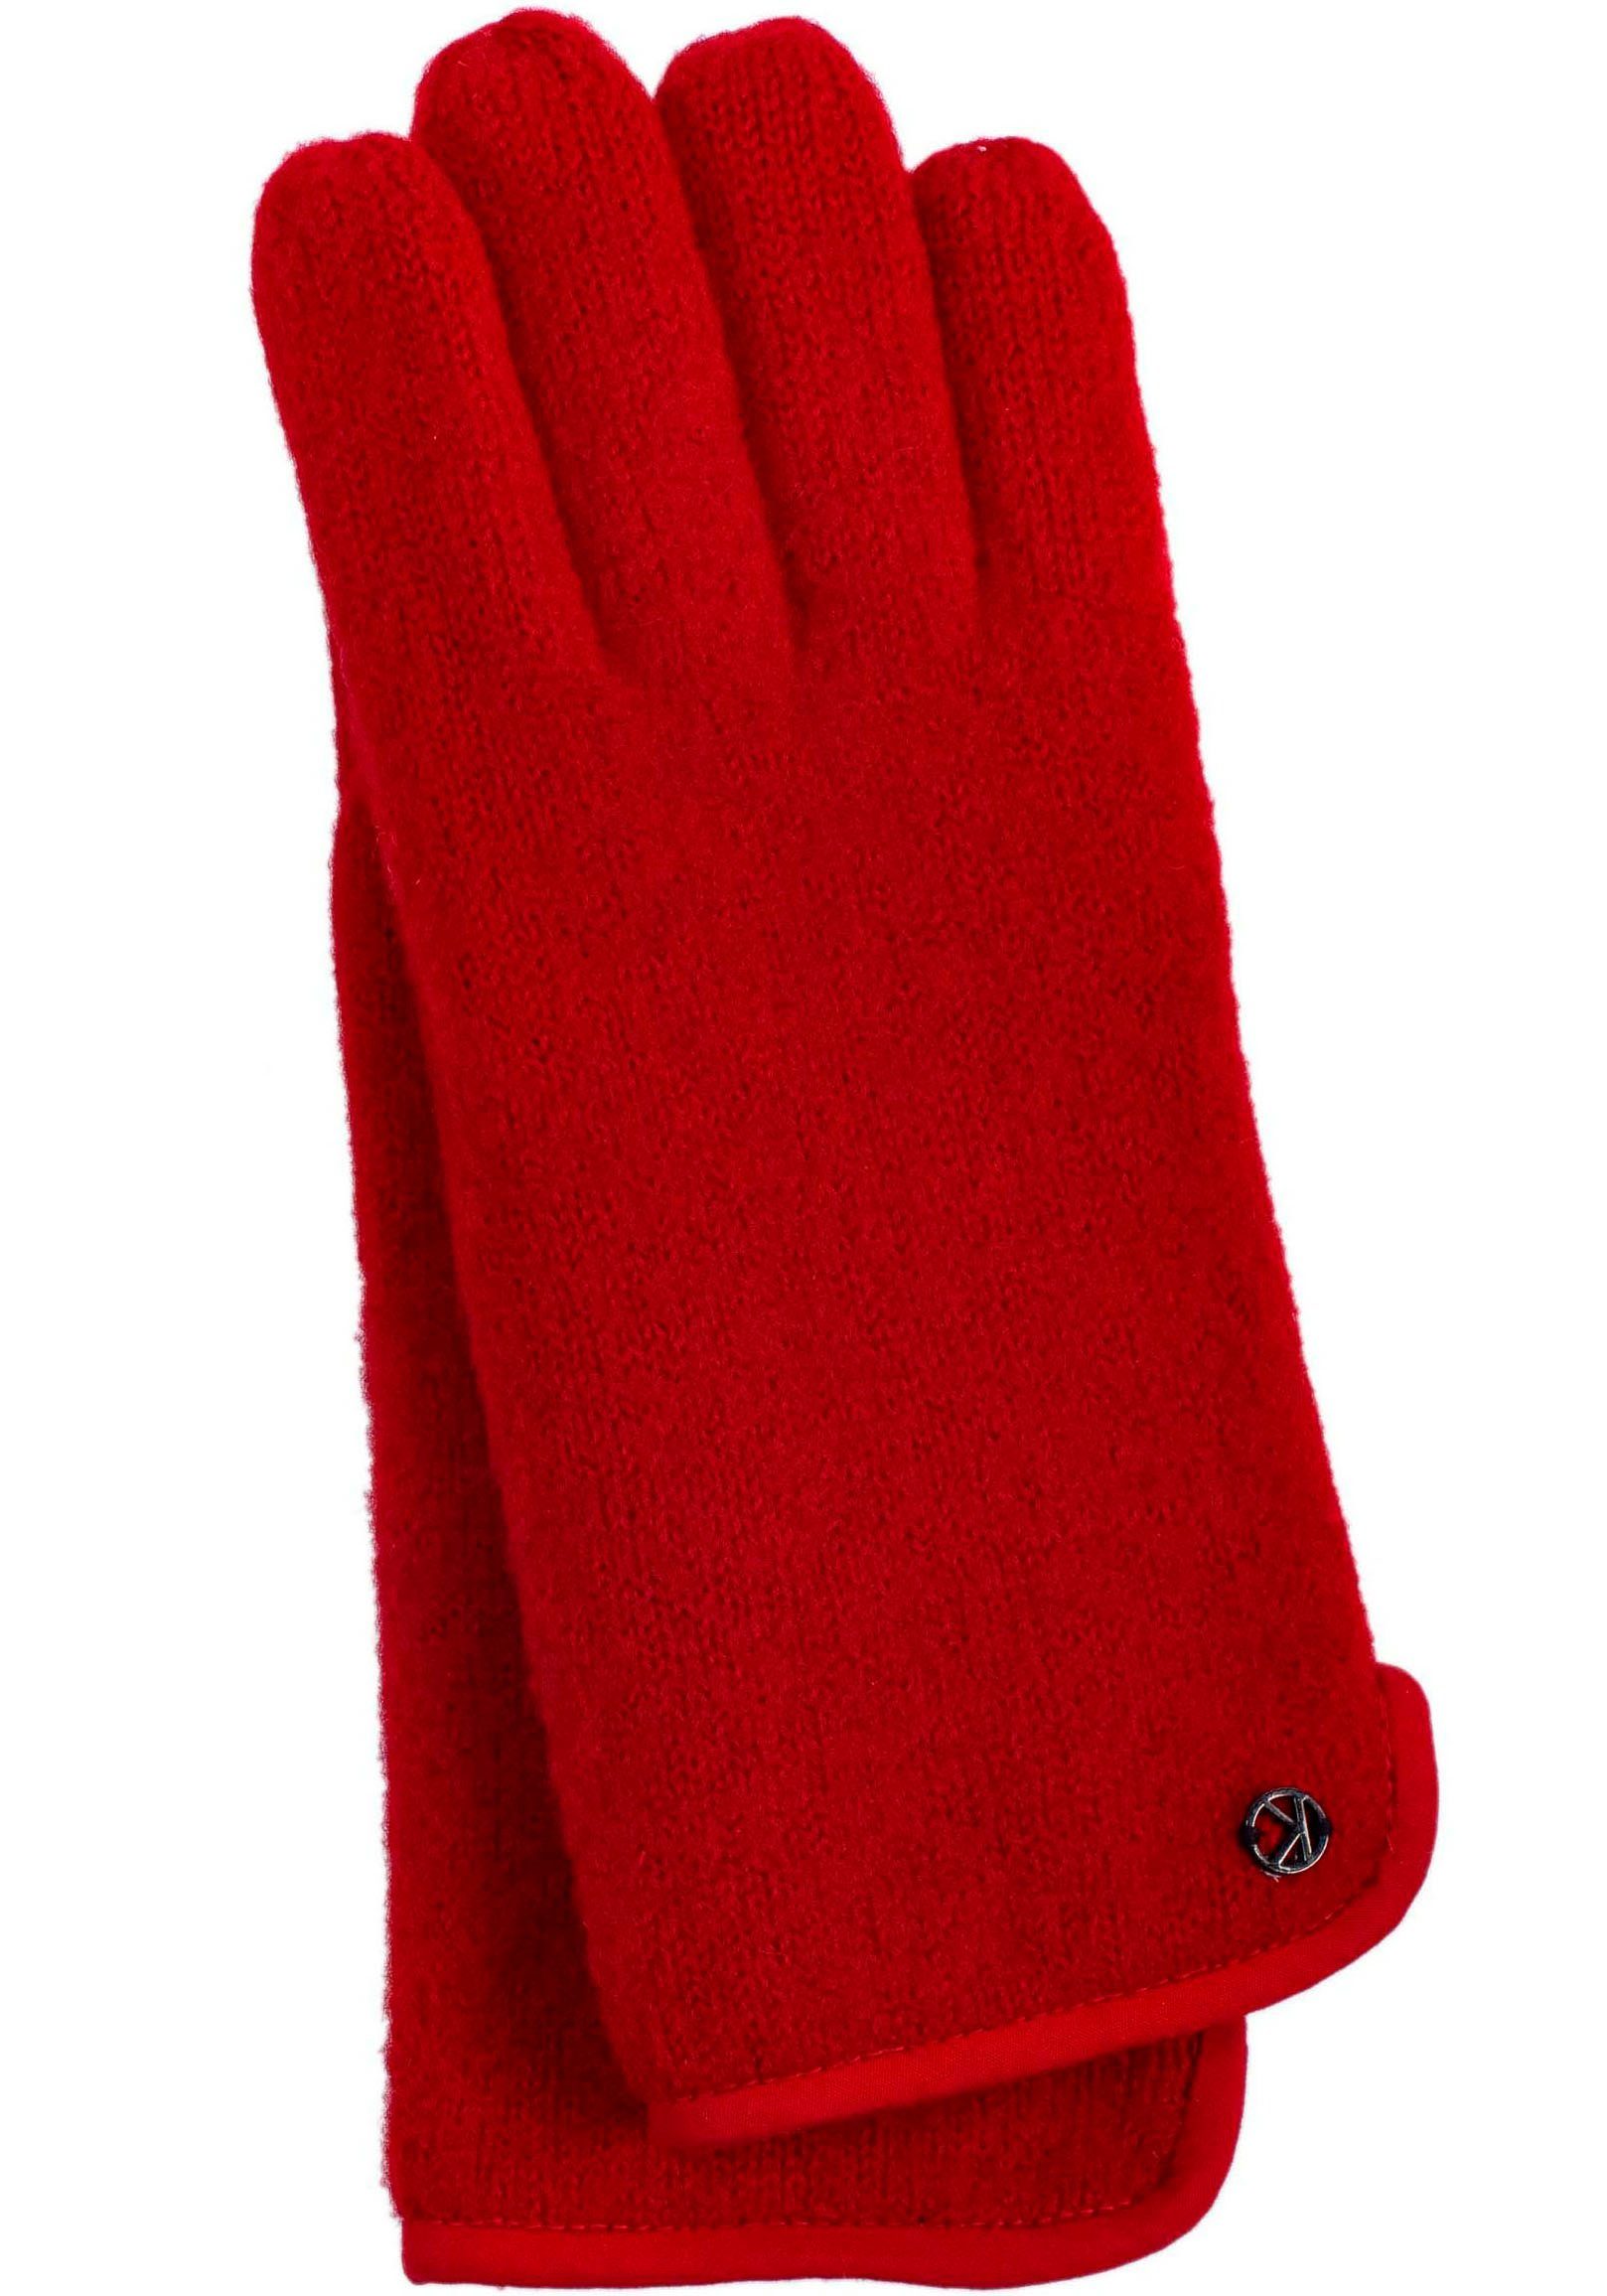 KESSLER Strickhandschuhe Sasha aus gewalkter Schurwolle, Wind- und Wasserabweised red